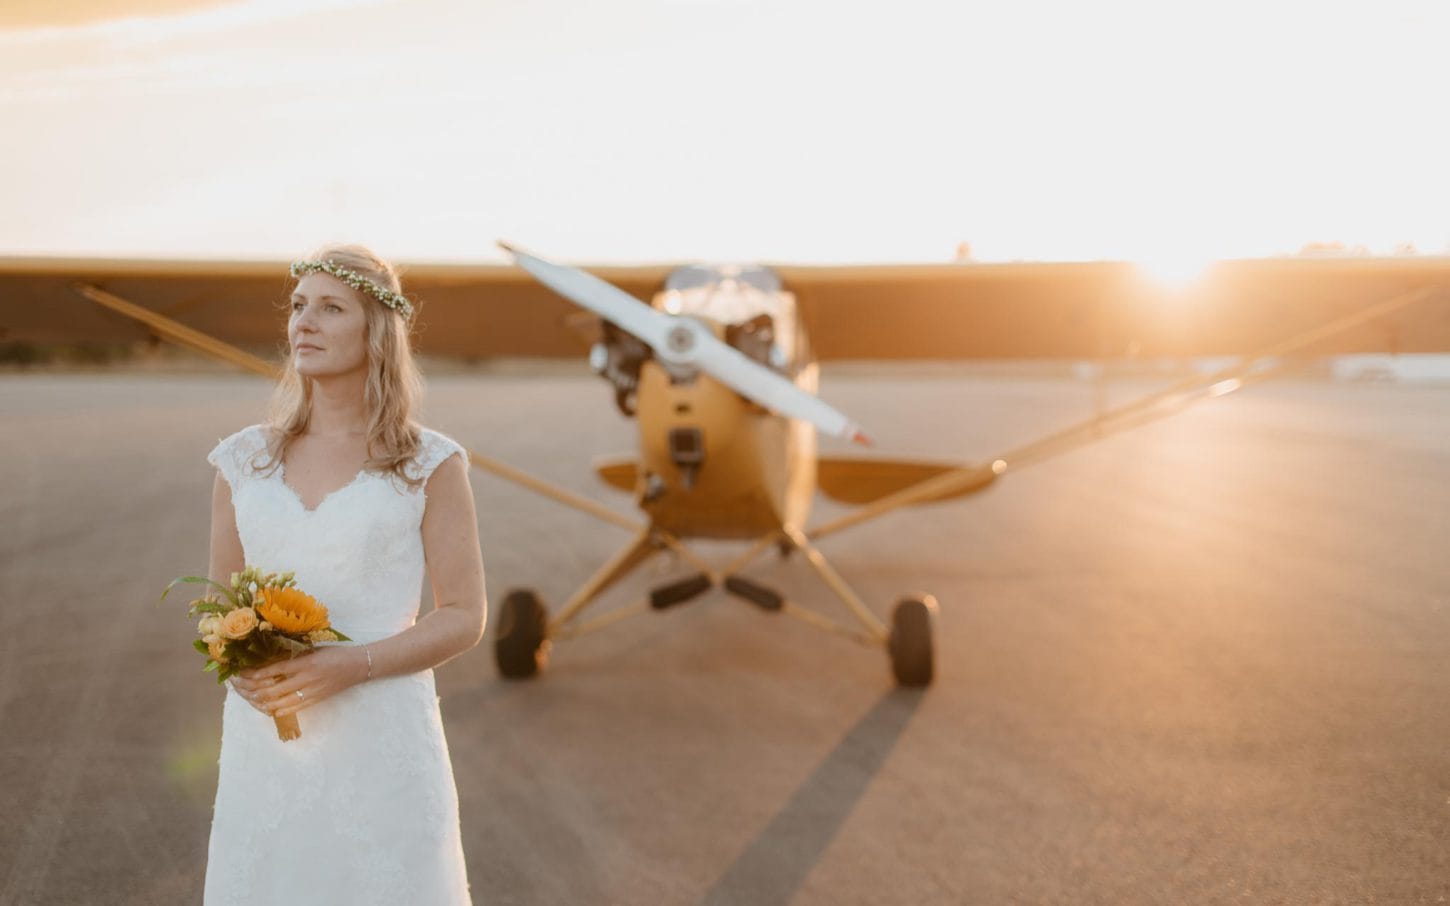 photo d'une mariée devant un avion biplace des années 40 lors d’une séance de couple day-after poétique & romantique sur le thème du voyage à l’aérodrome d’Ancenis par Geoffrey Arnoldy photographe